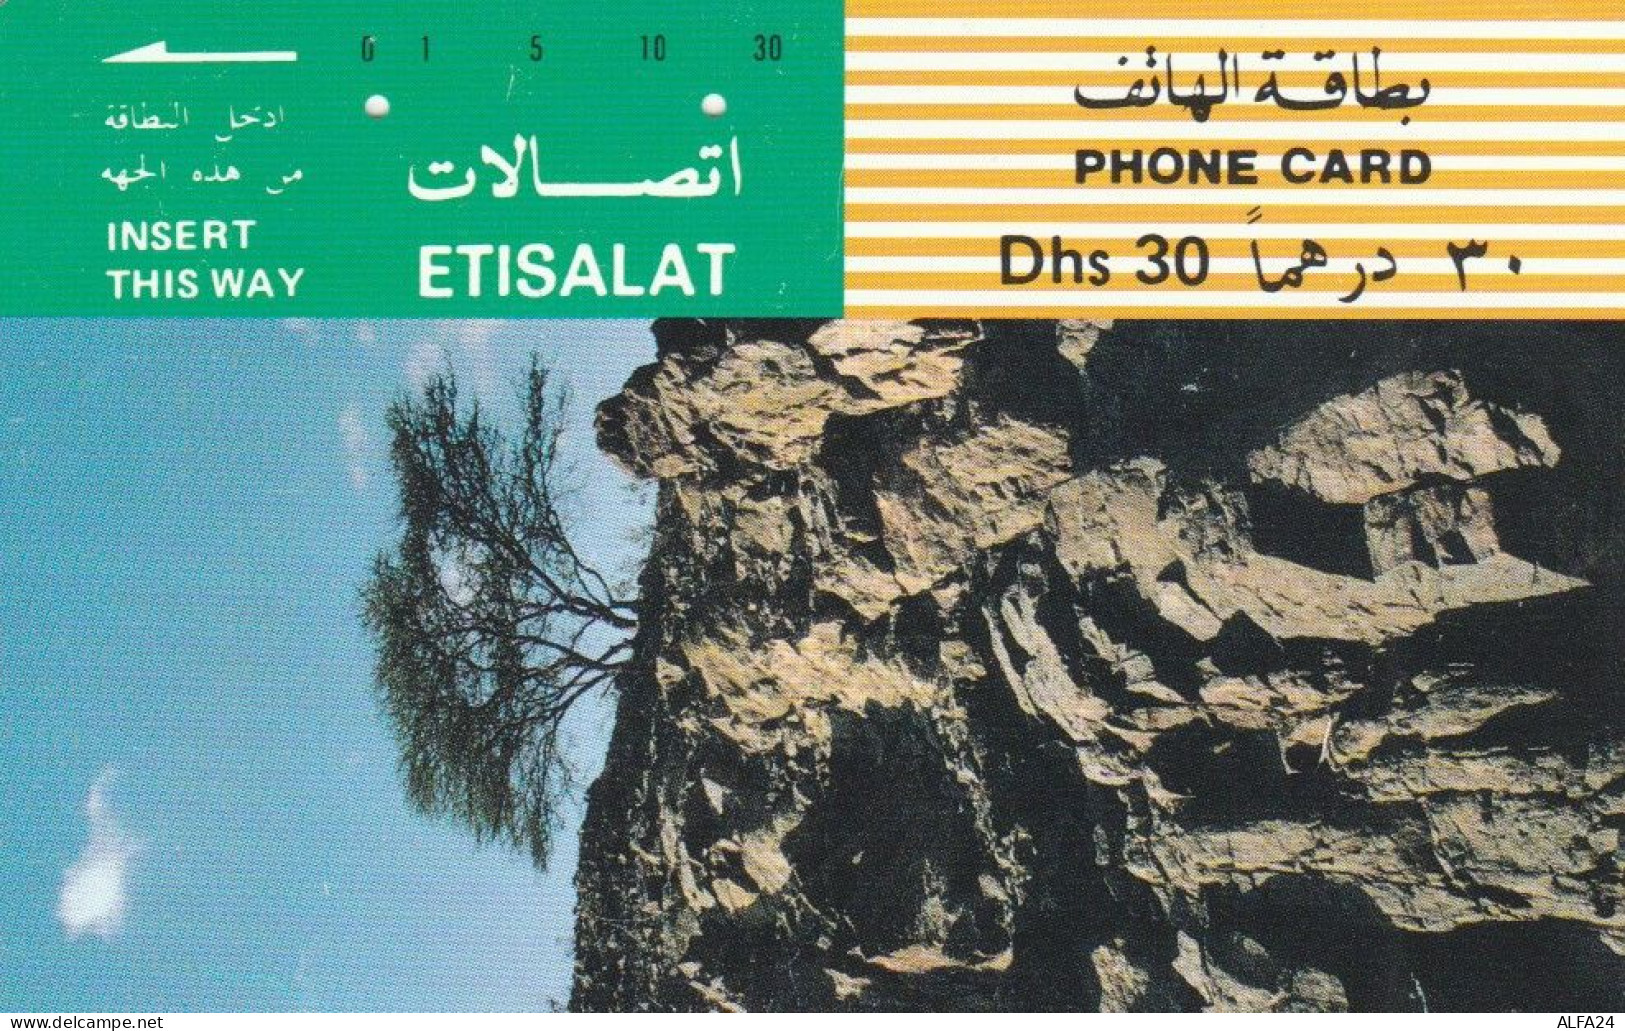 PHONE CARD EMIRATI ARABI (E74.27.7 - Ver. Arab. Emirate